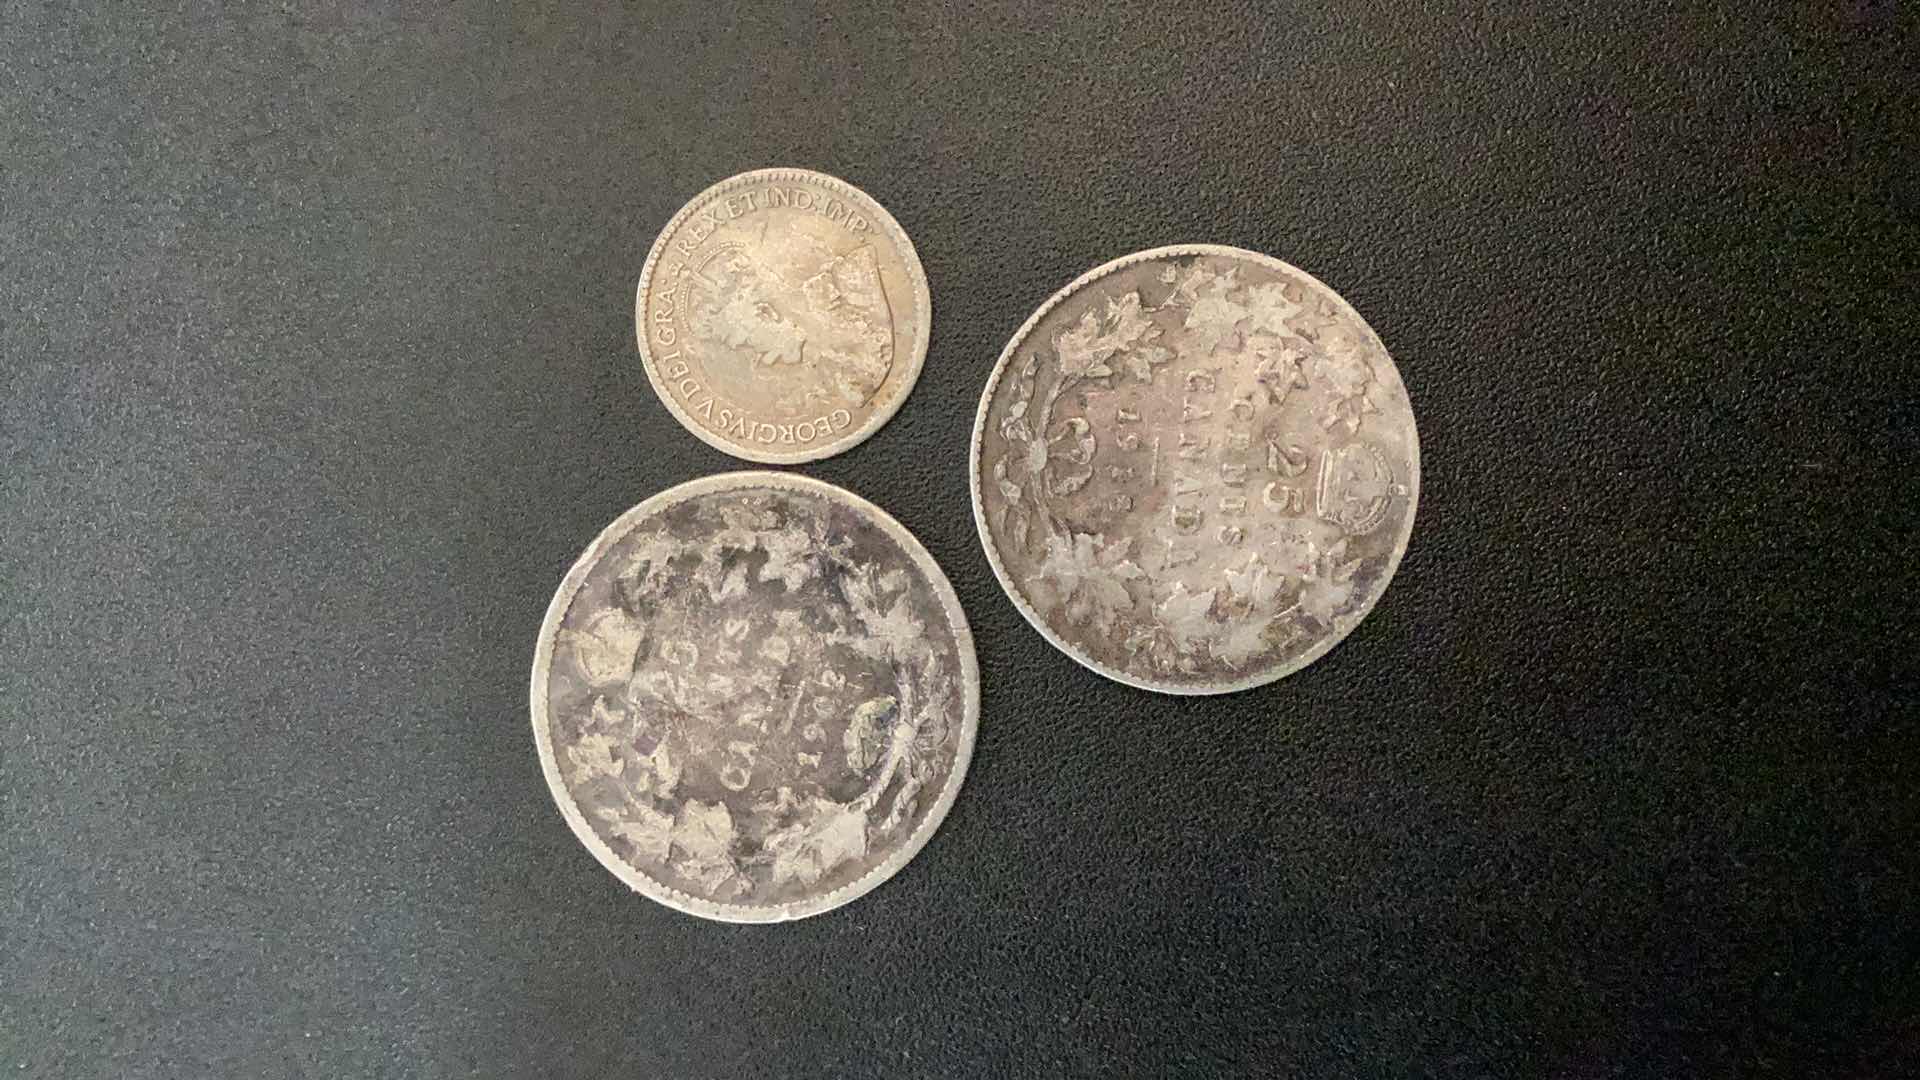 Photo 2 of 3 COLLECTIBLE COINS - CANADA, 1902, 1916, 1918